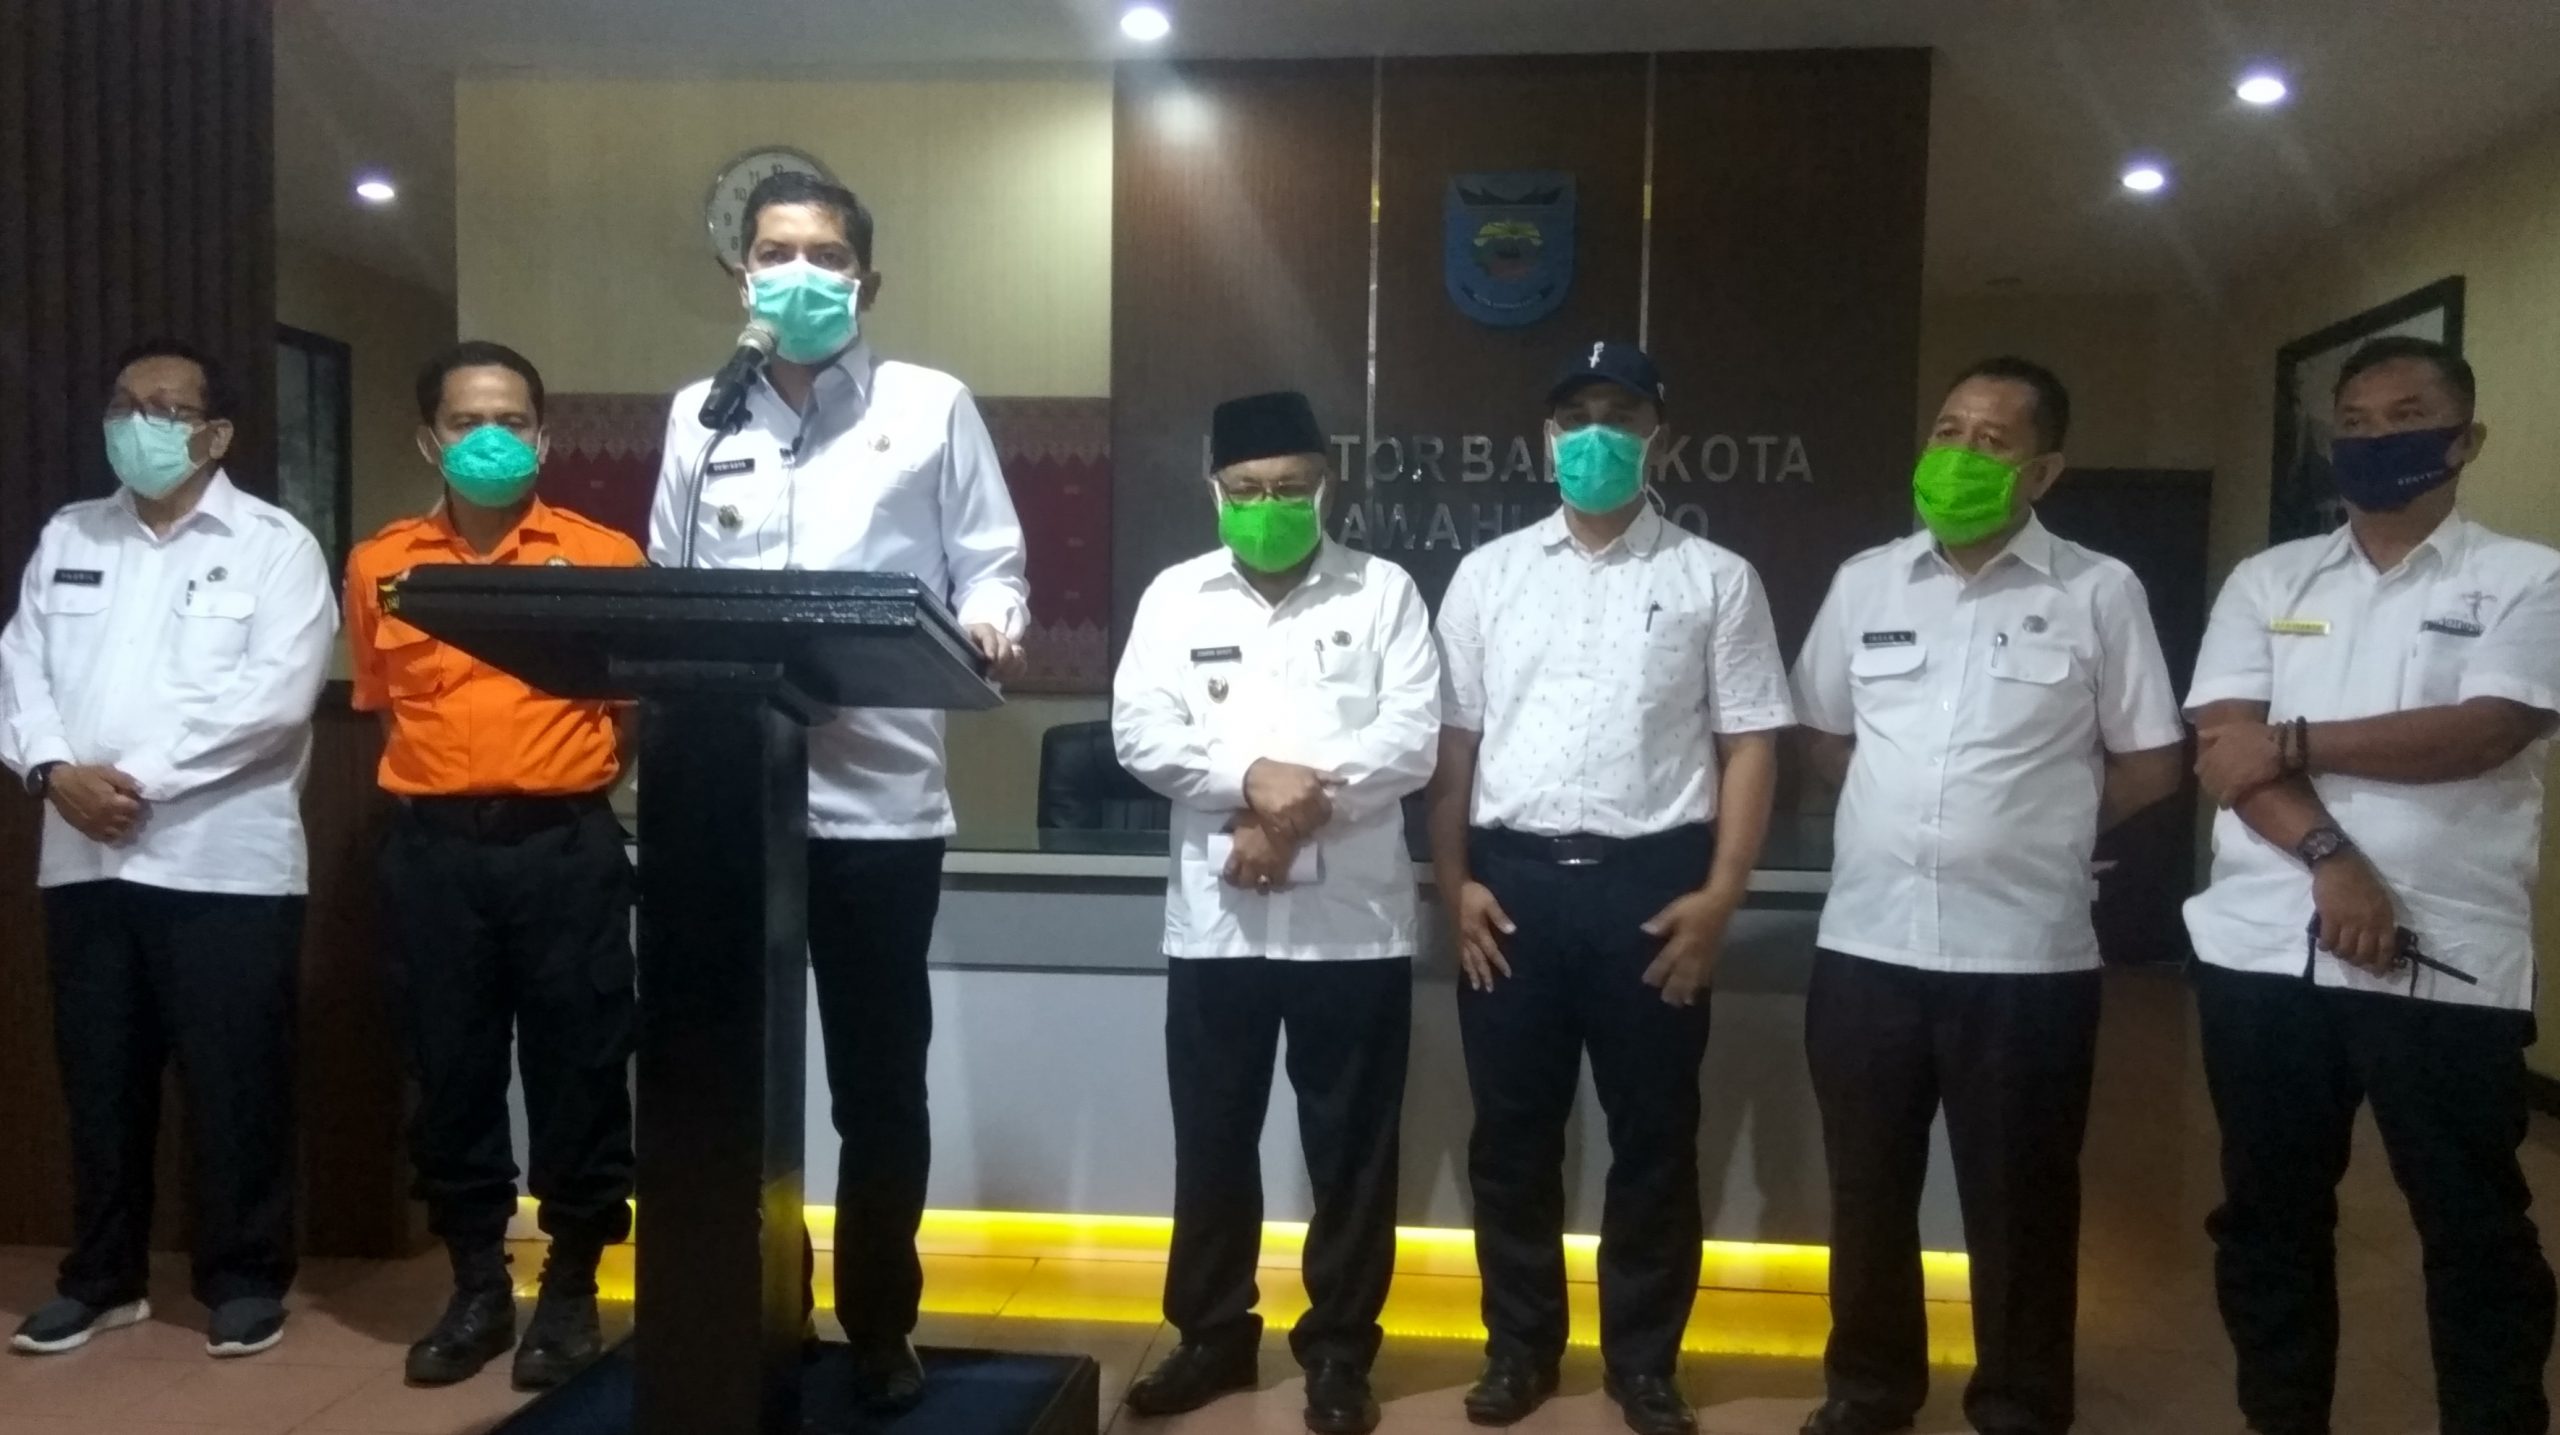 Foto Dokter, Perawat dan Pegawai RSUD Sawahlunto Dikarantina